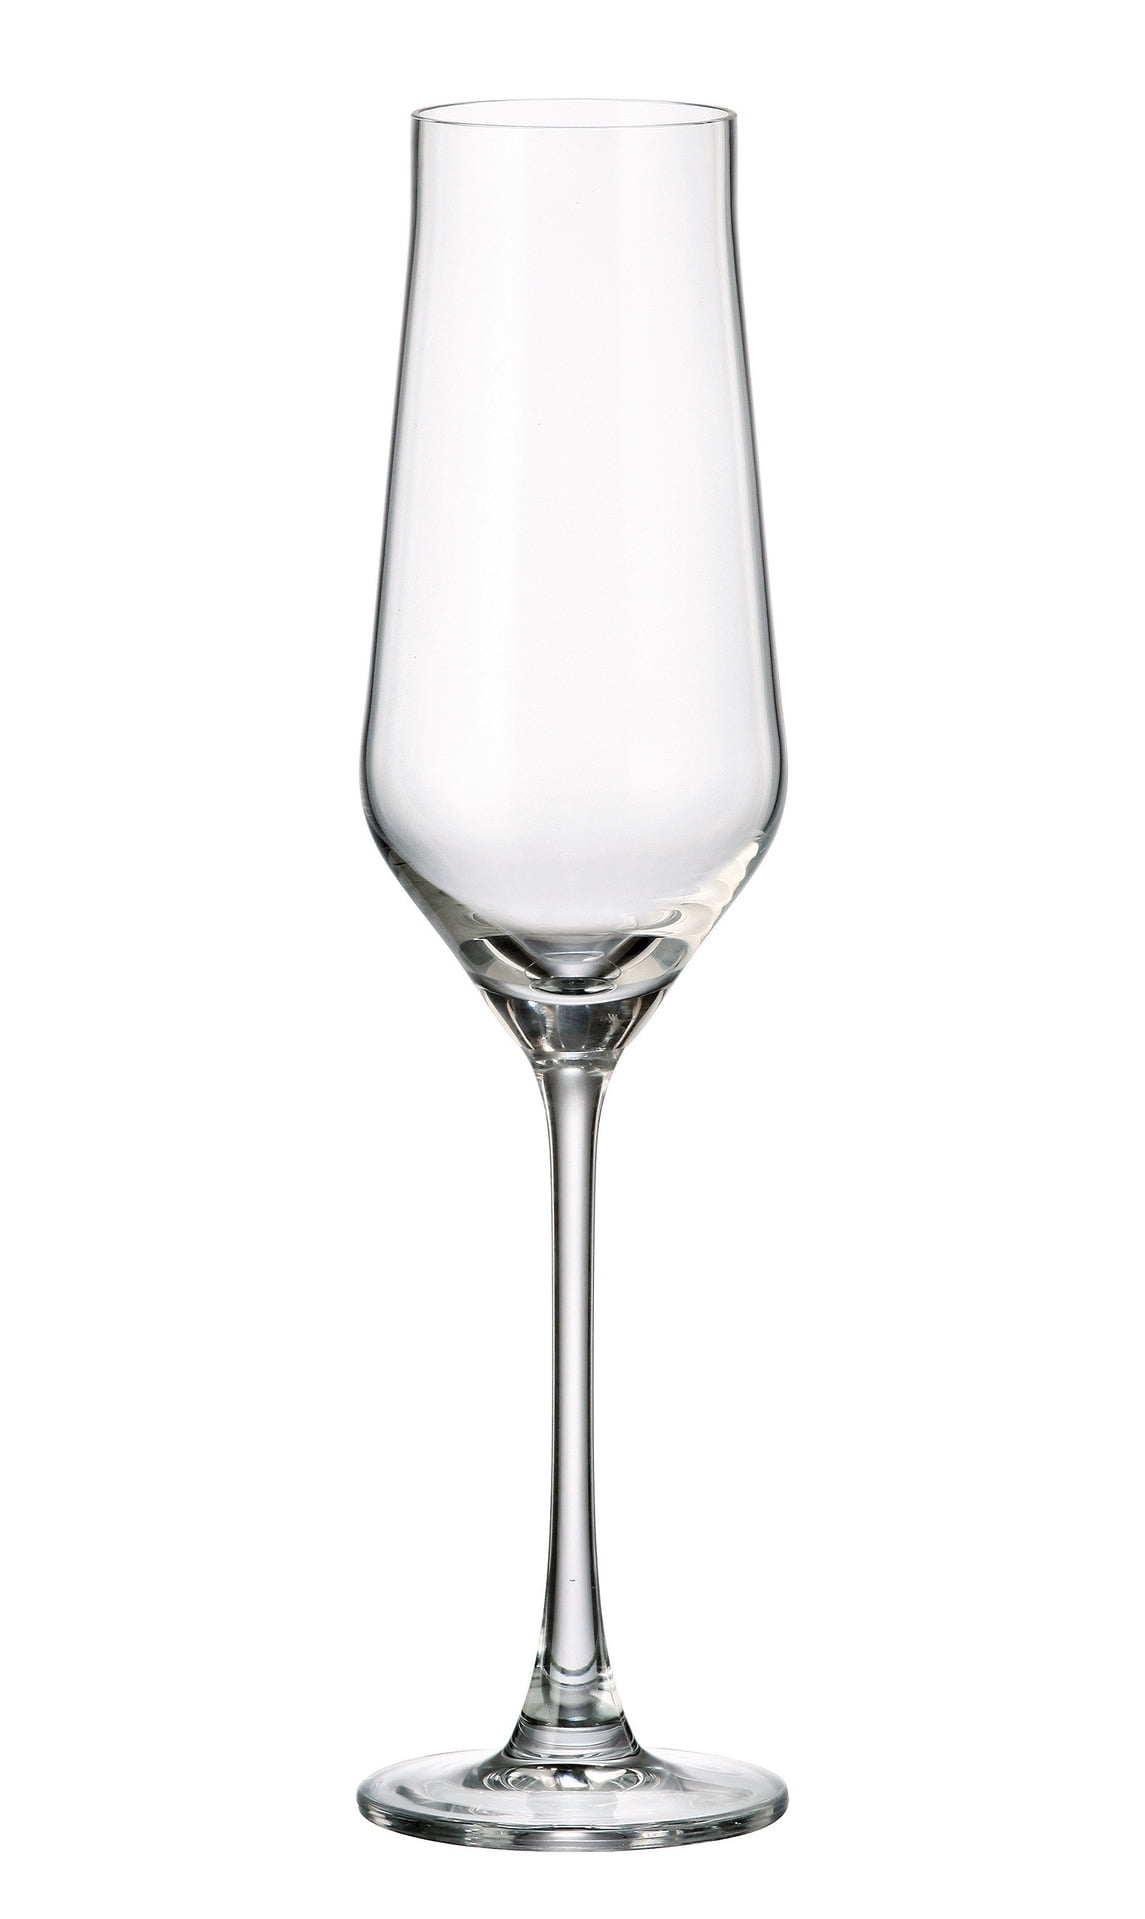 Crystalite Bohemia Alca Non-Lead Crystal Wine Glasses Stemware